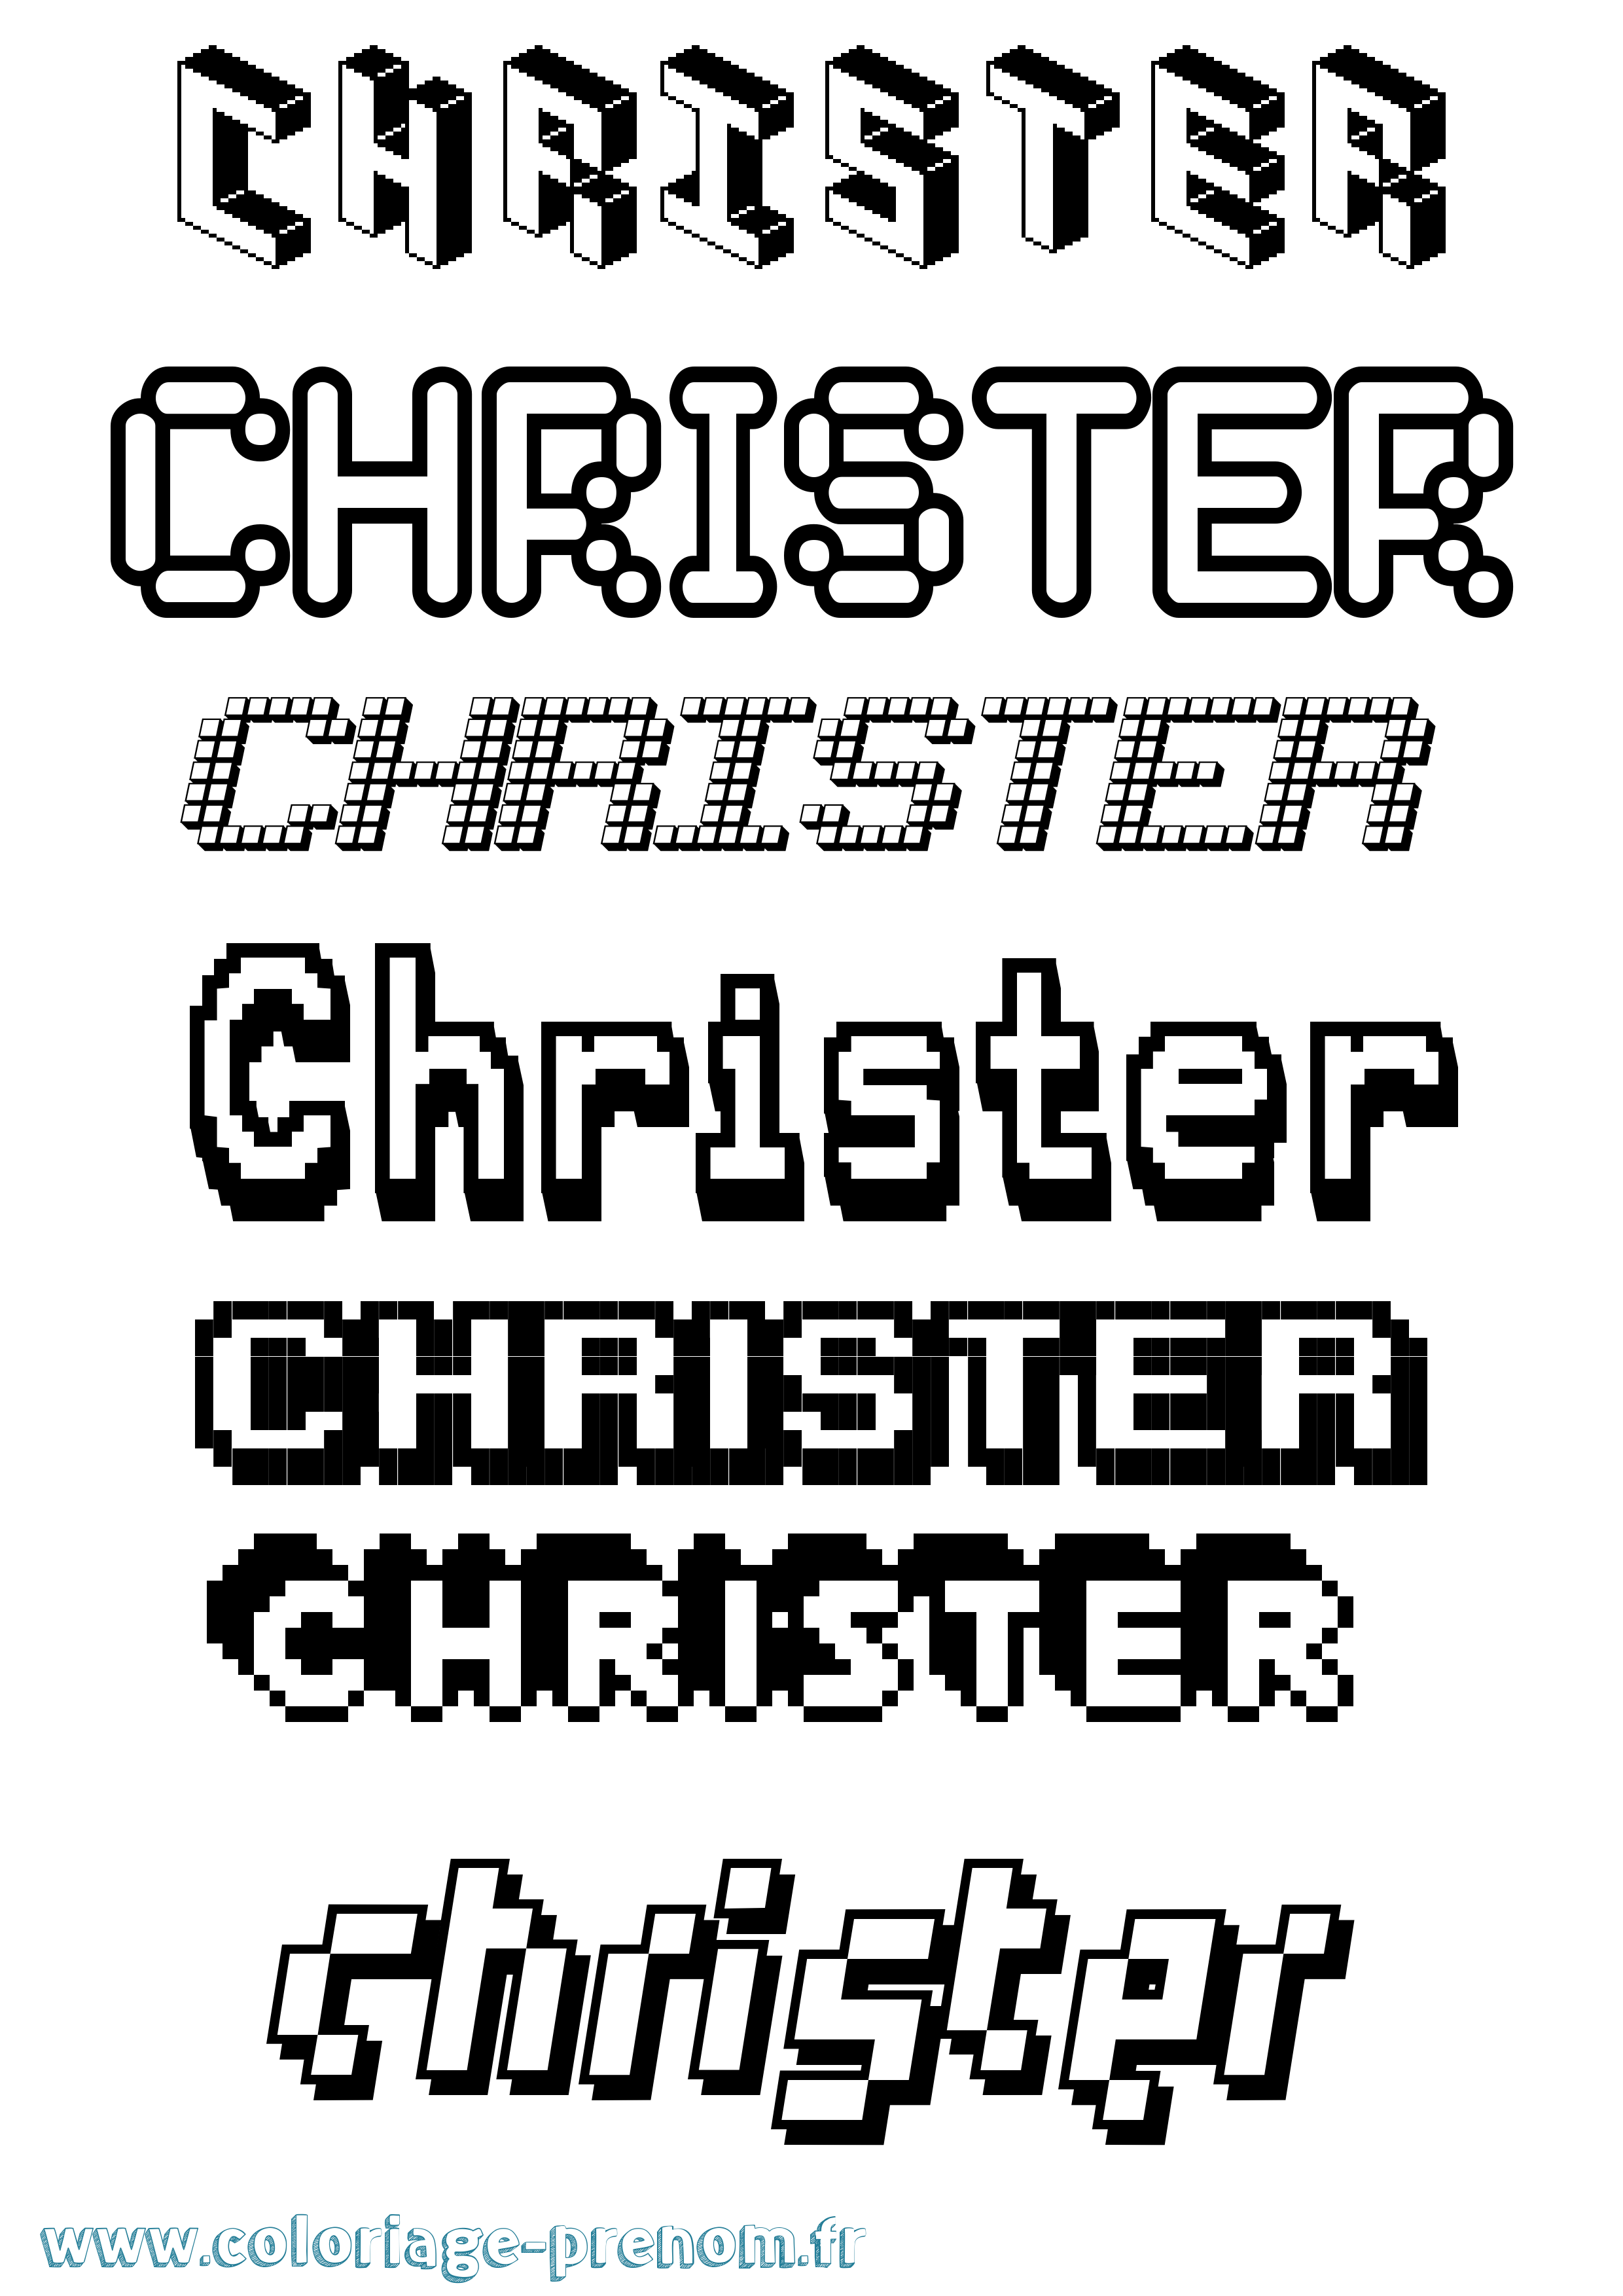 Coloriage prénom Christer Pixel